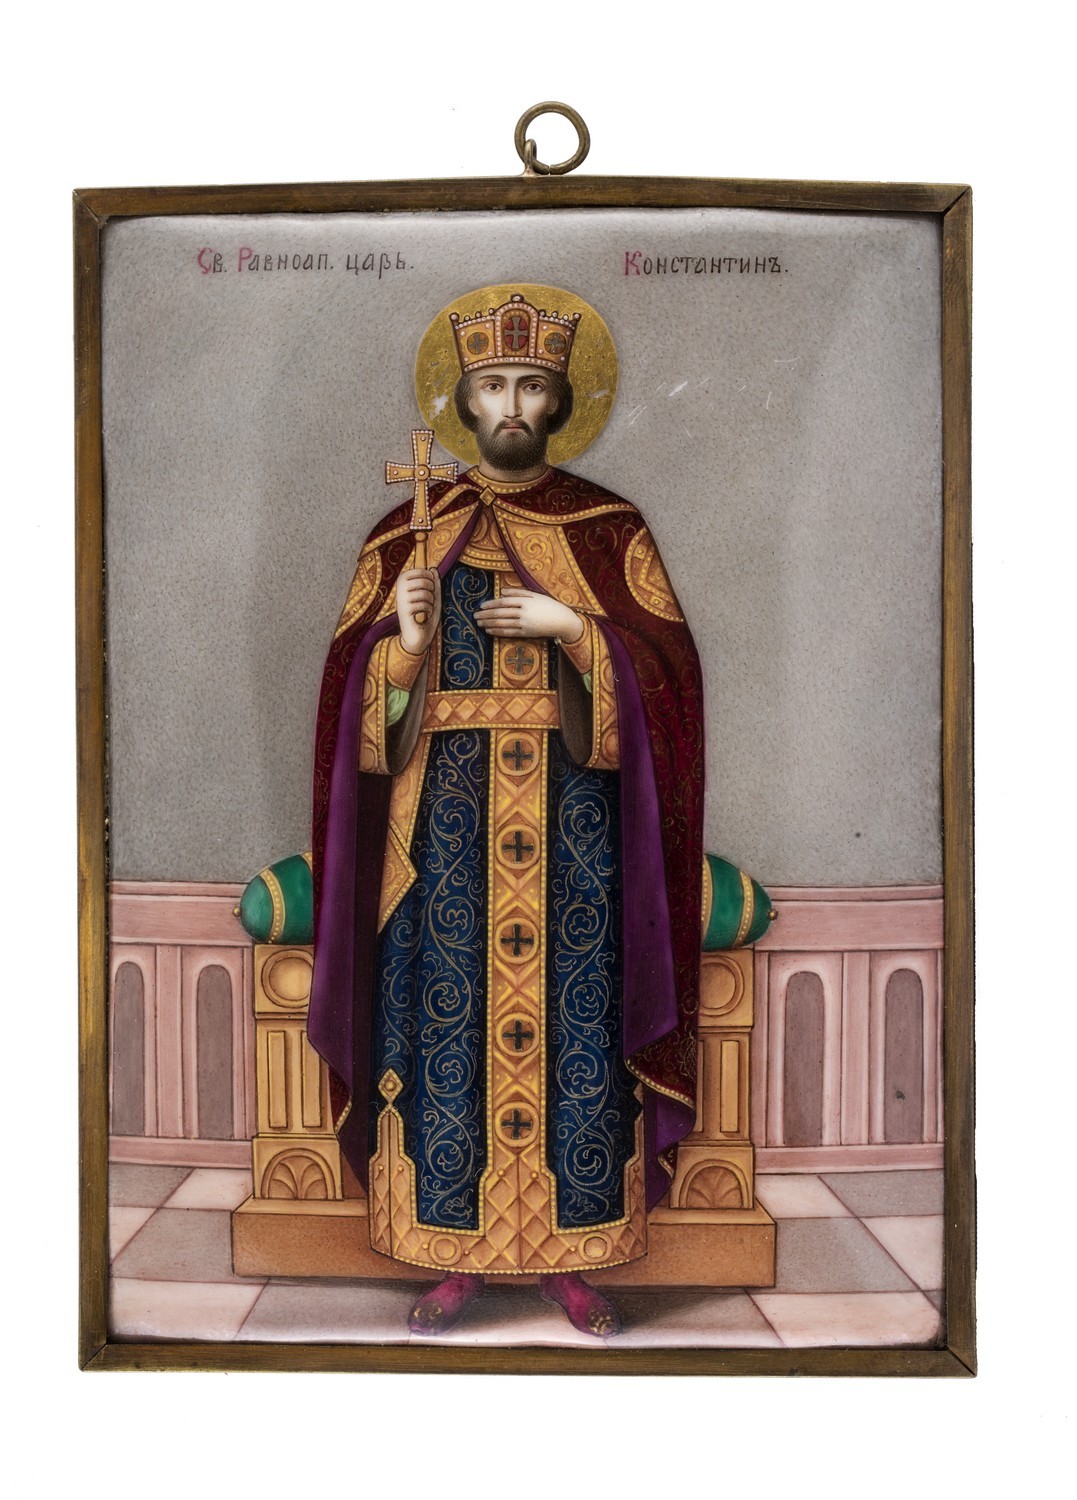 408. А. А. Назаров. Икона «Святой царь Константин»